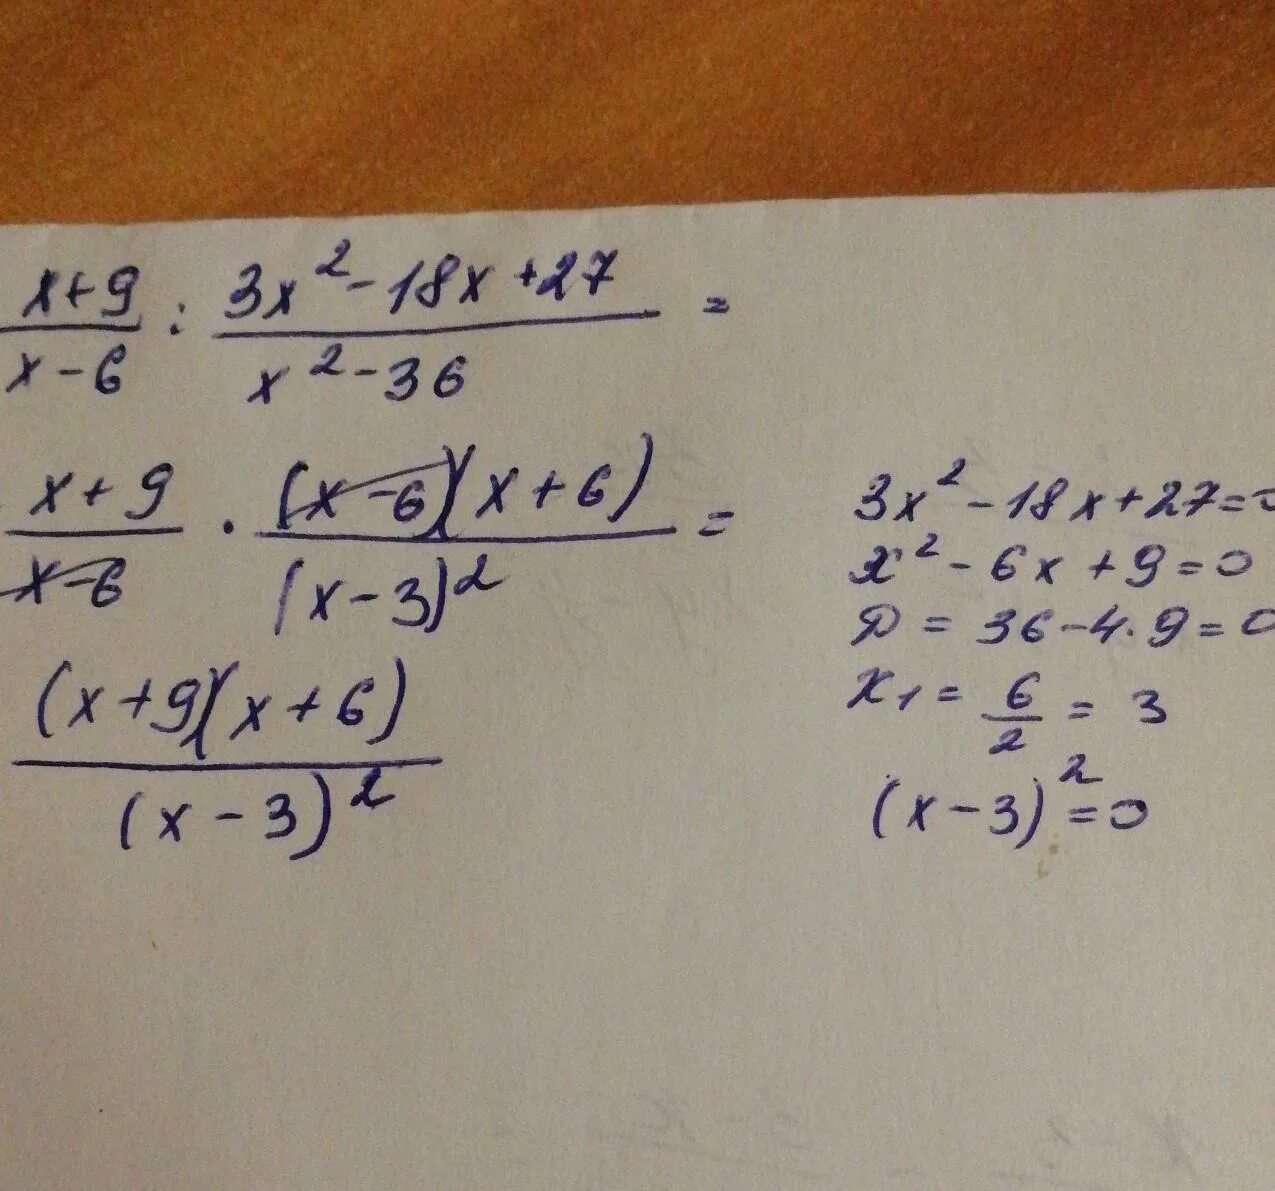 3 6 x 27 2x. Упростить выражение x2-9/x-6 2 - 27 6x-x 2. X-9/x2-9 3/3x-x2 упростите выражение. 3/X+3+3/x2-3x+2x/9-x2 упростите выражение. X^3-9x^2+27x-27.